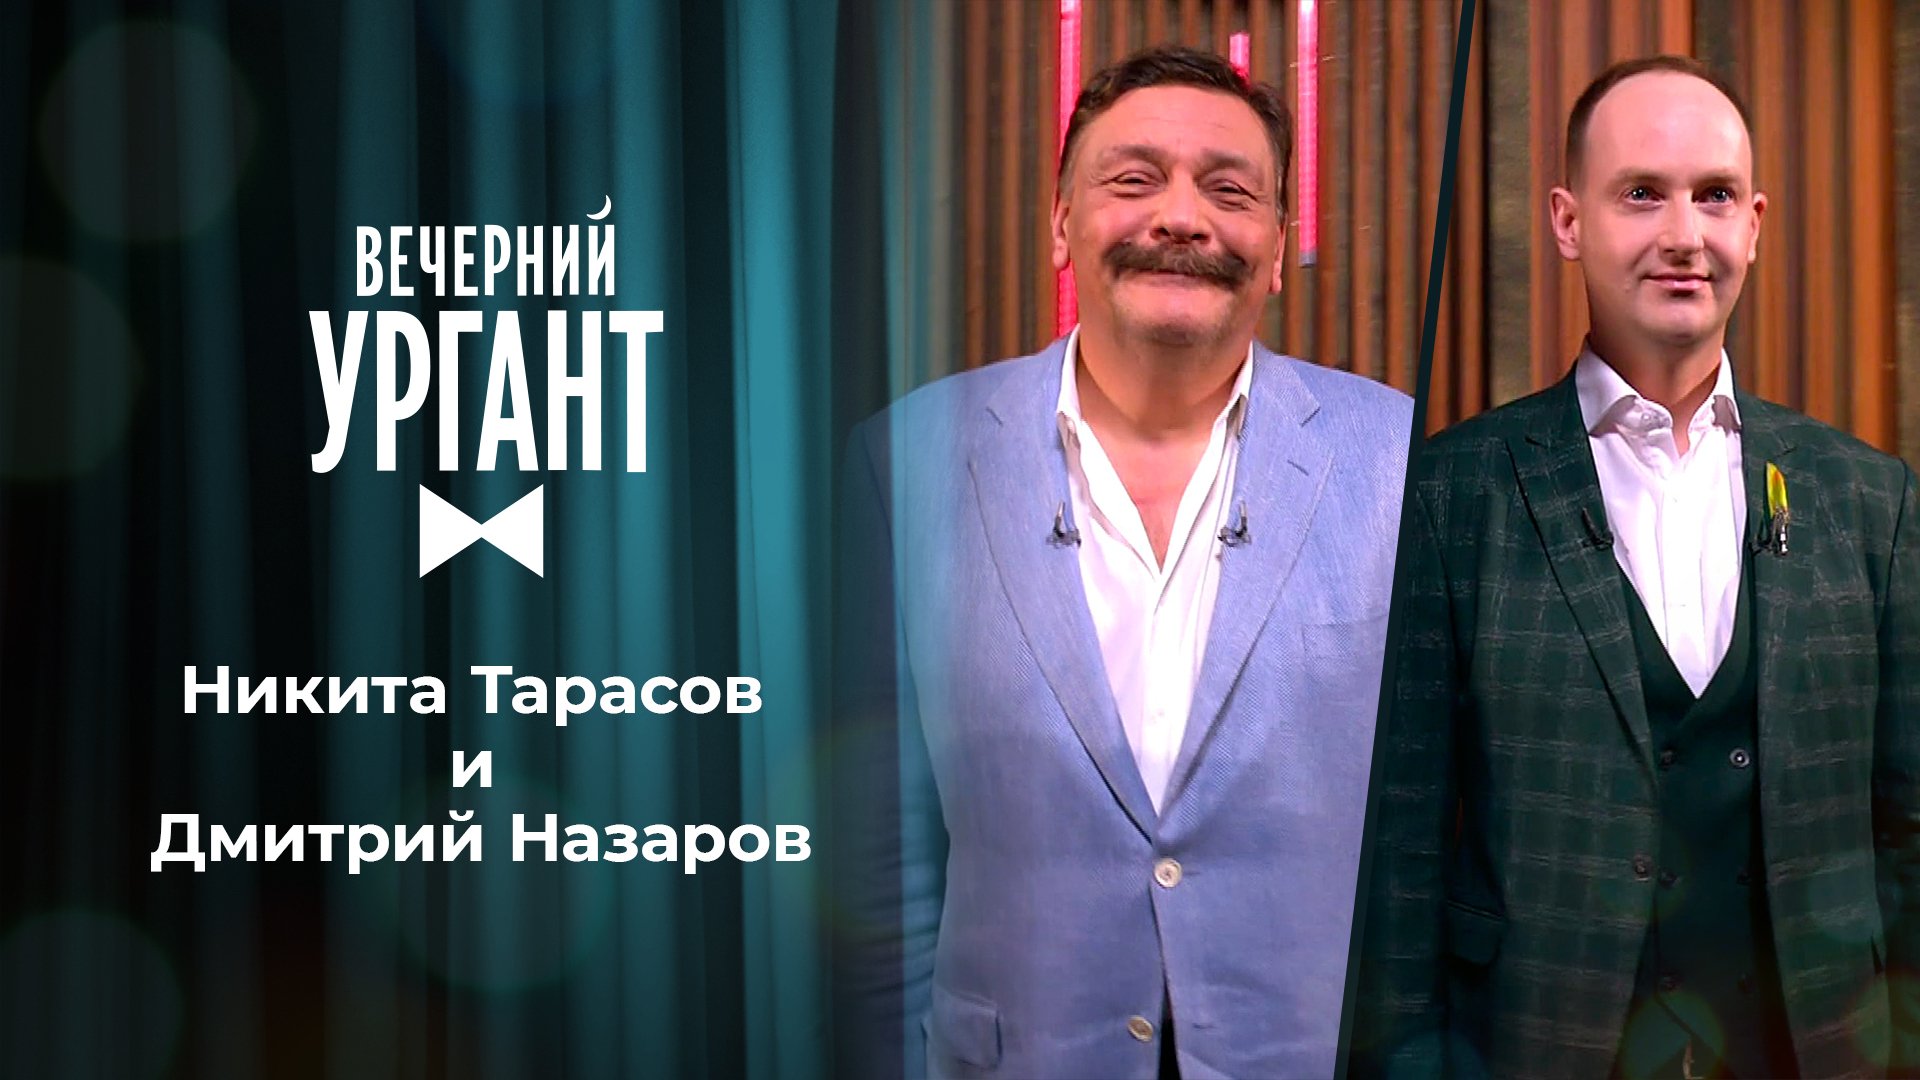 «Вечерний Ургант». Никита Тарасов и Дмитрий Назаров